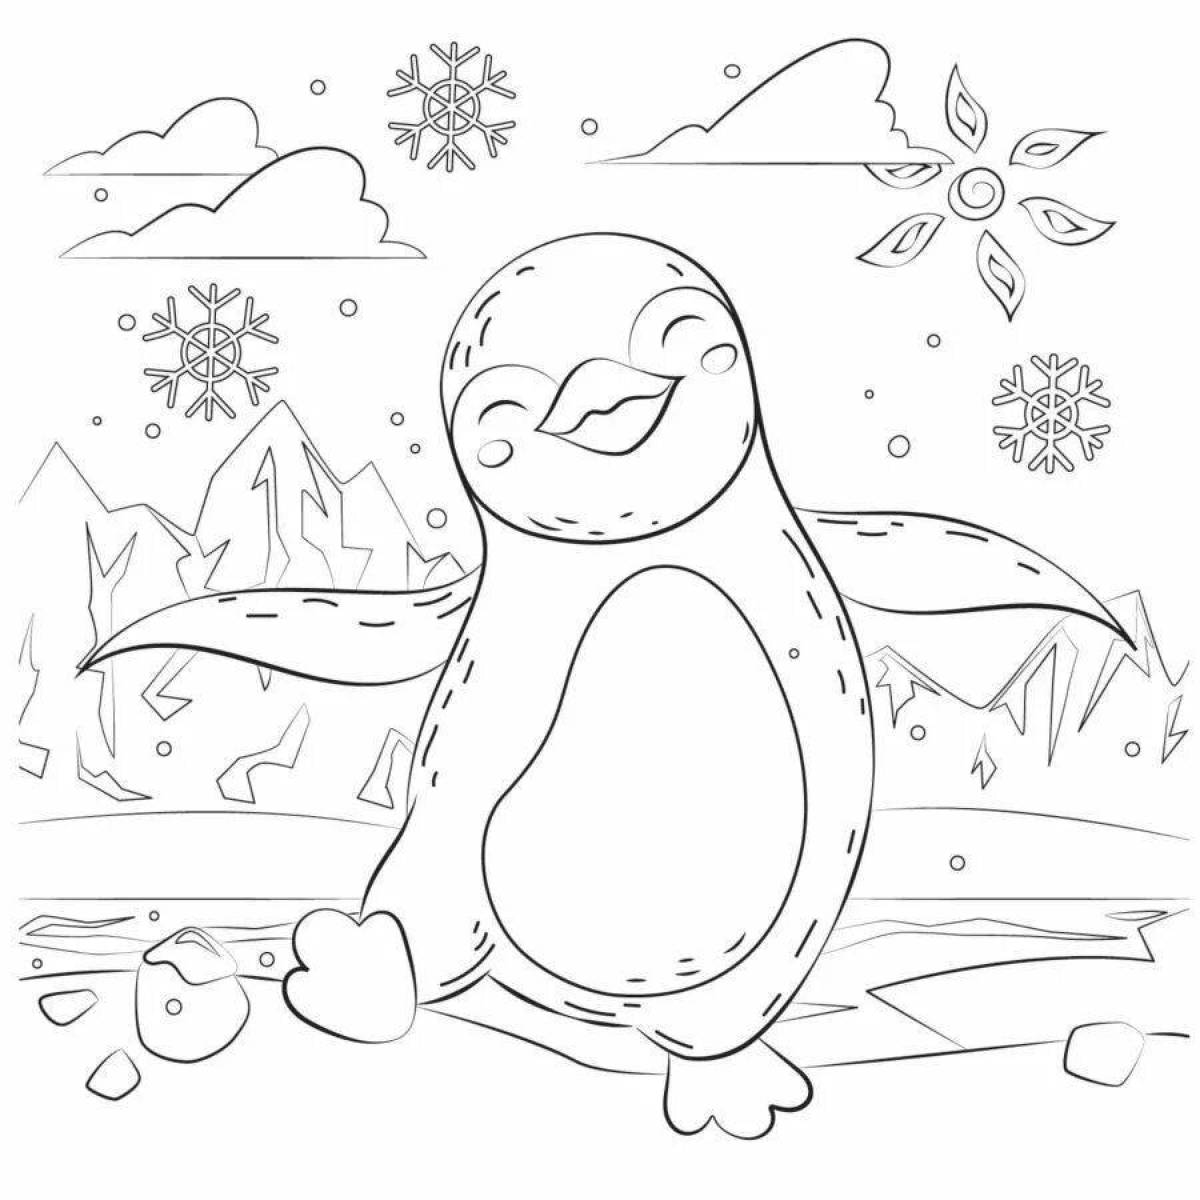 Сладкий рисунок пингвина для детей